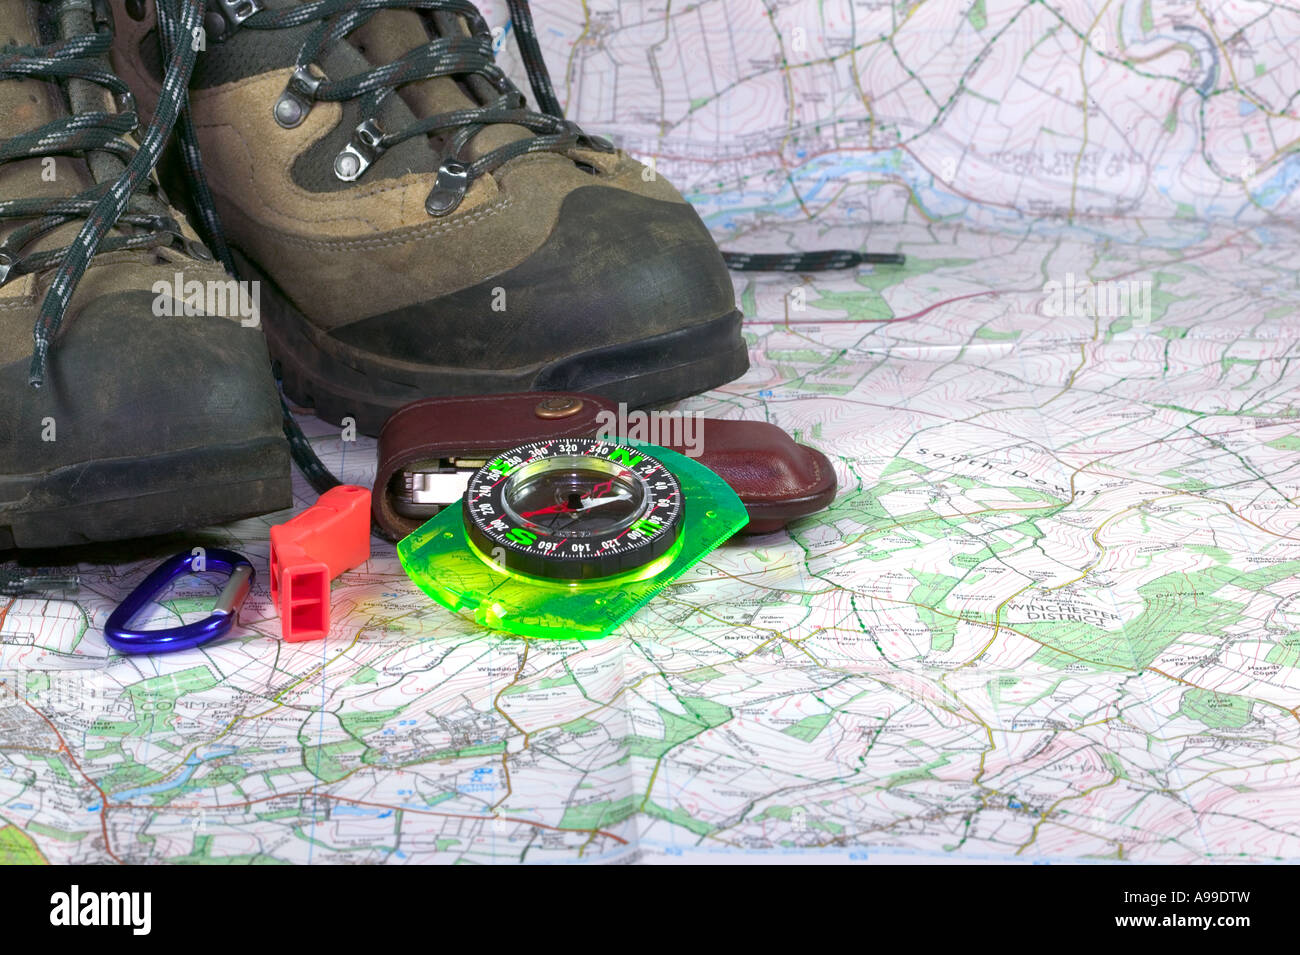 Wanderschuhe, Kompass und Zubehör auf einem Kartenhintergrund Stockfoto